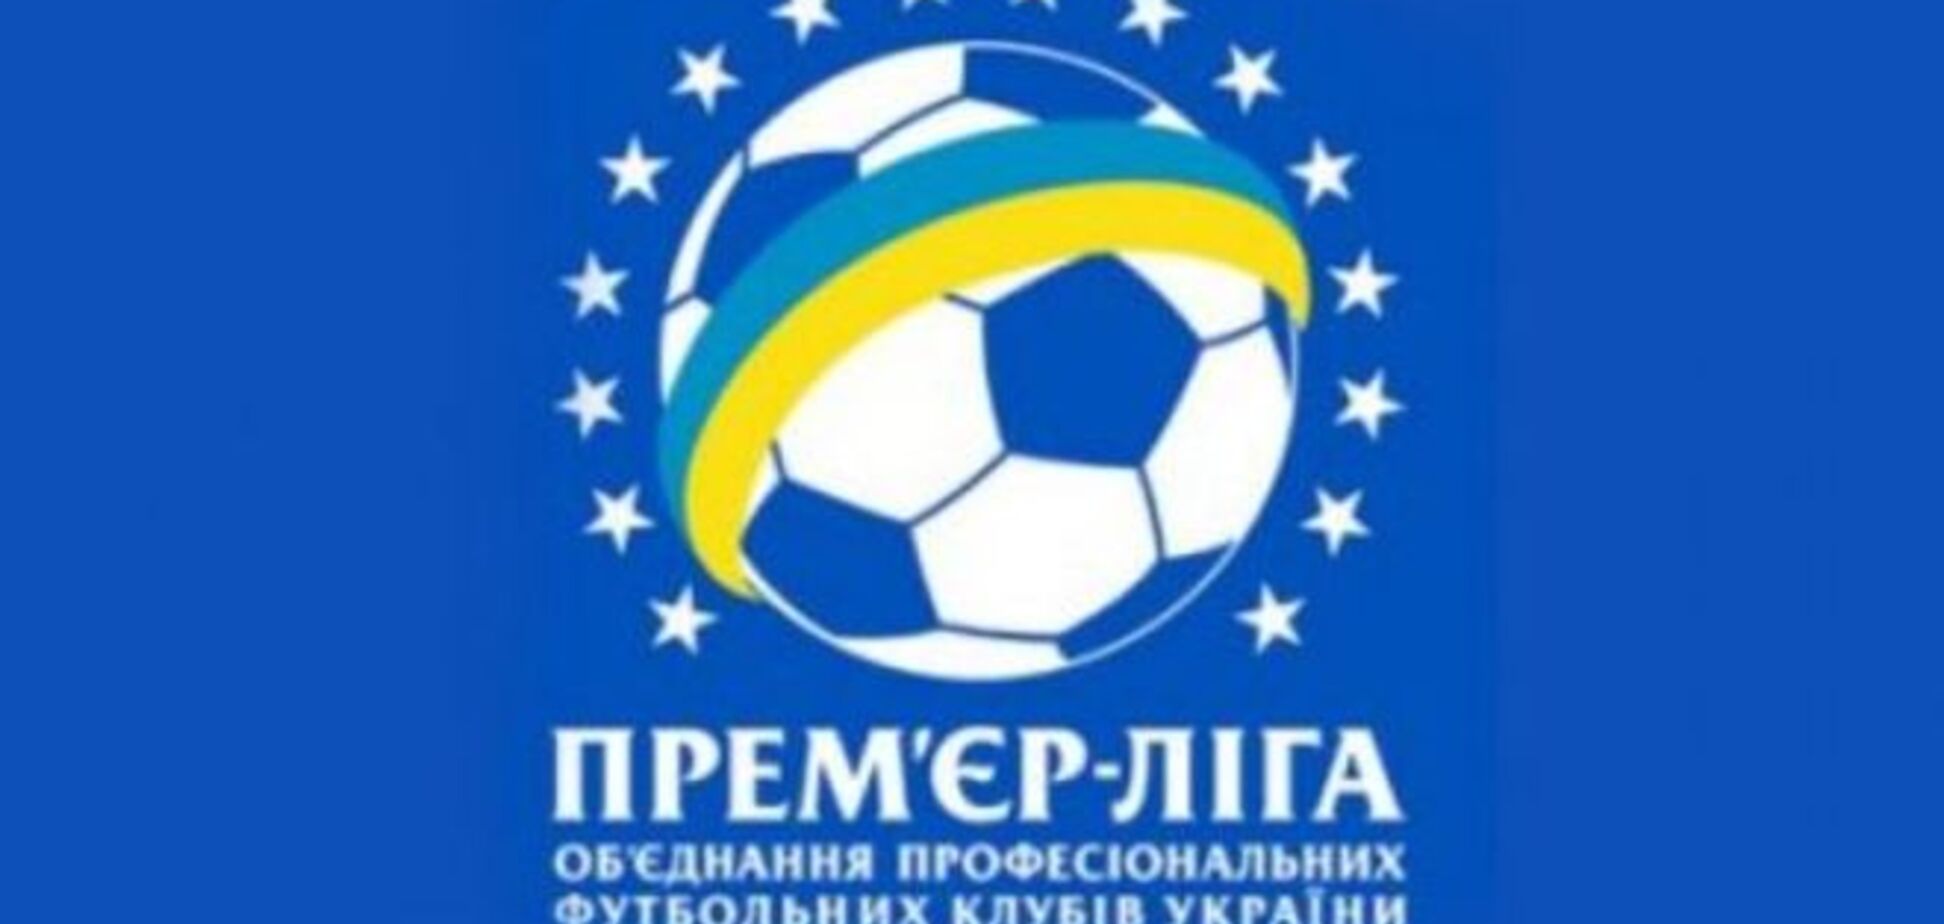 17 клубов получили разрешения на выступление в Премьер-лиге Украины